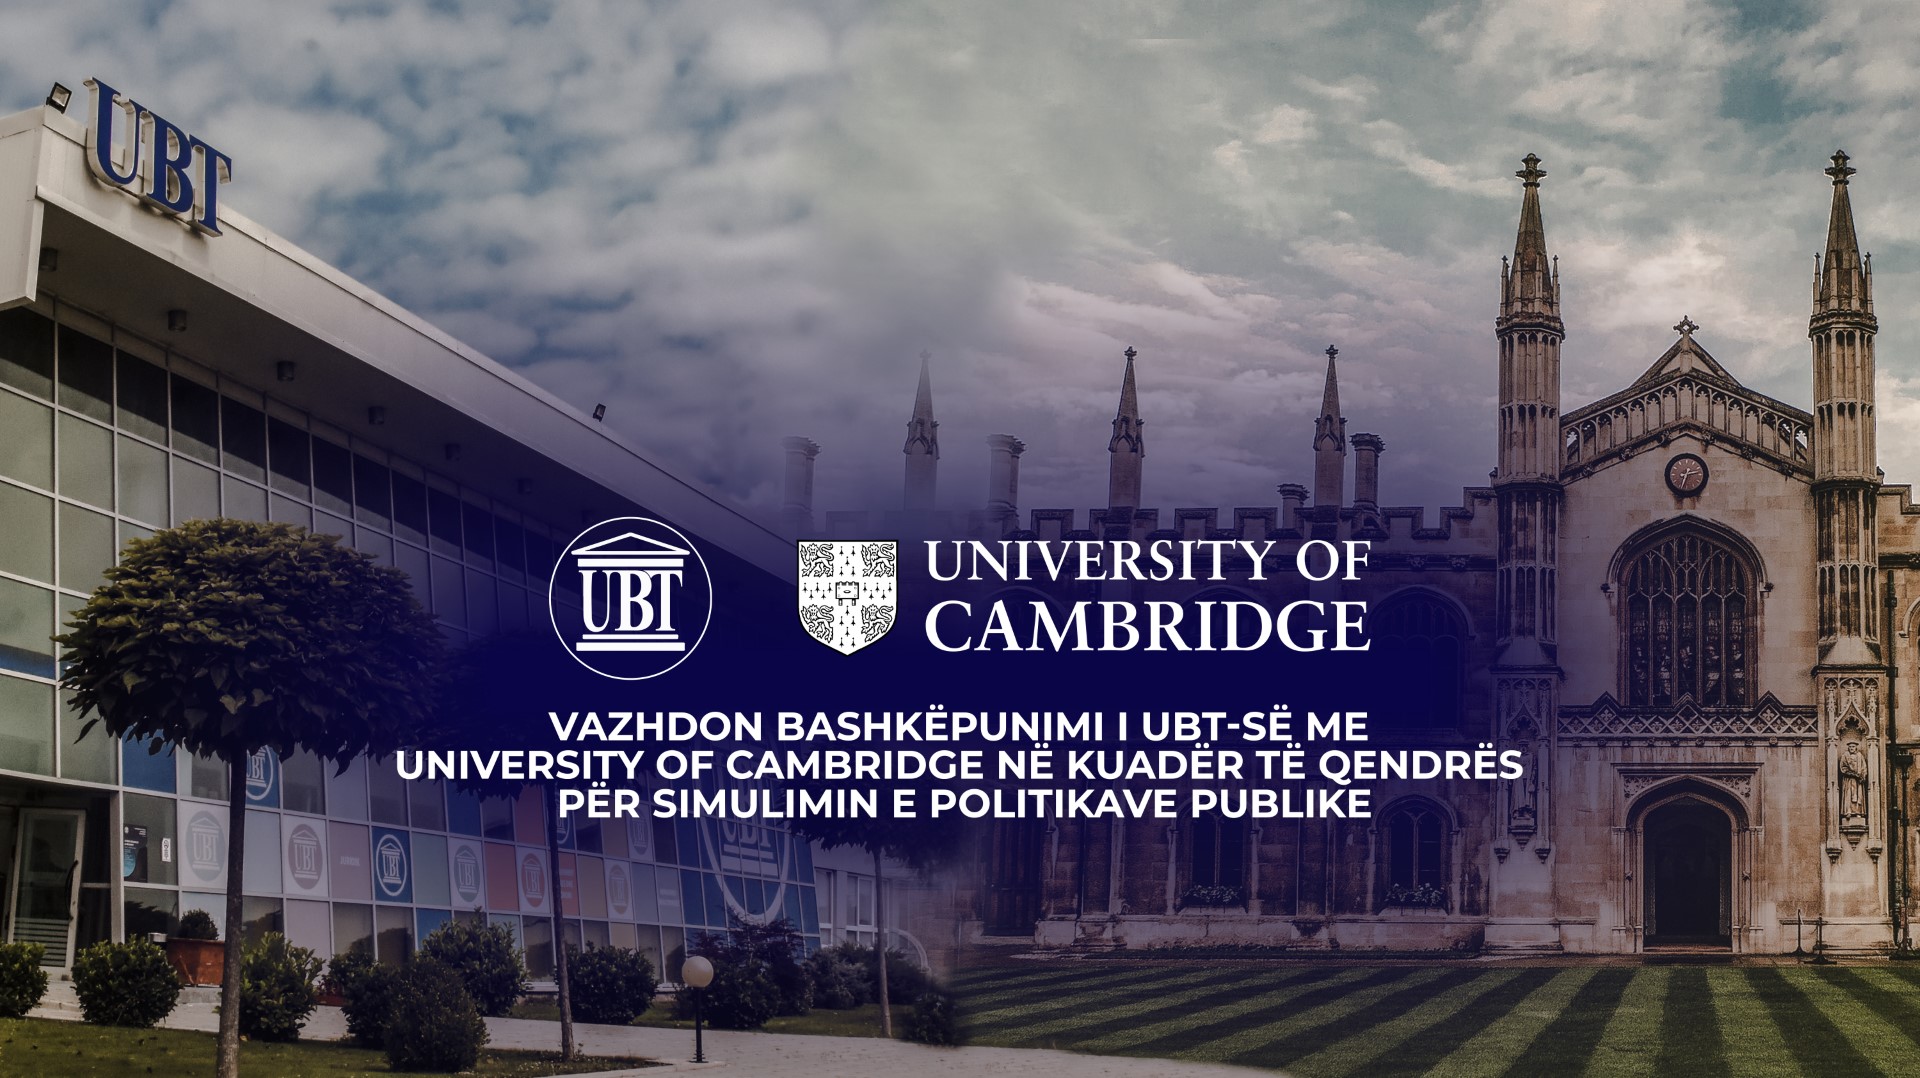 Vazhdon bashkëpunimi i UBT-së me University of Cambridge në kuadër të Qendrës për Simulimin e Politikave Publike